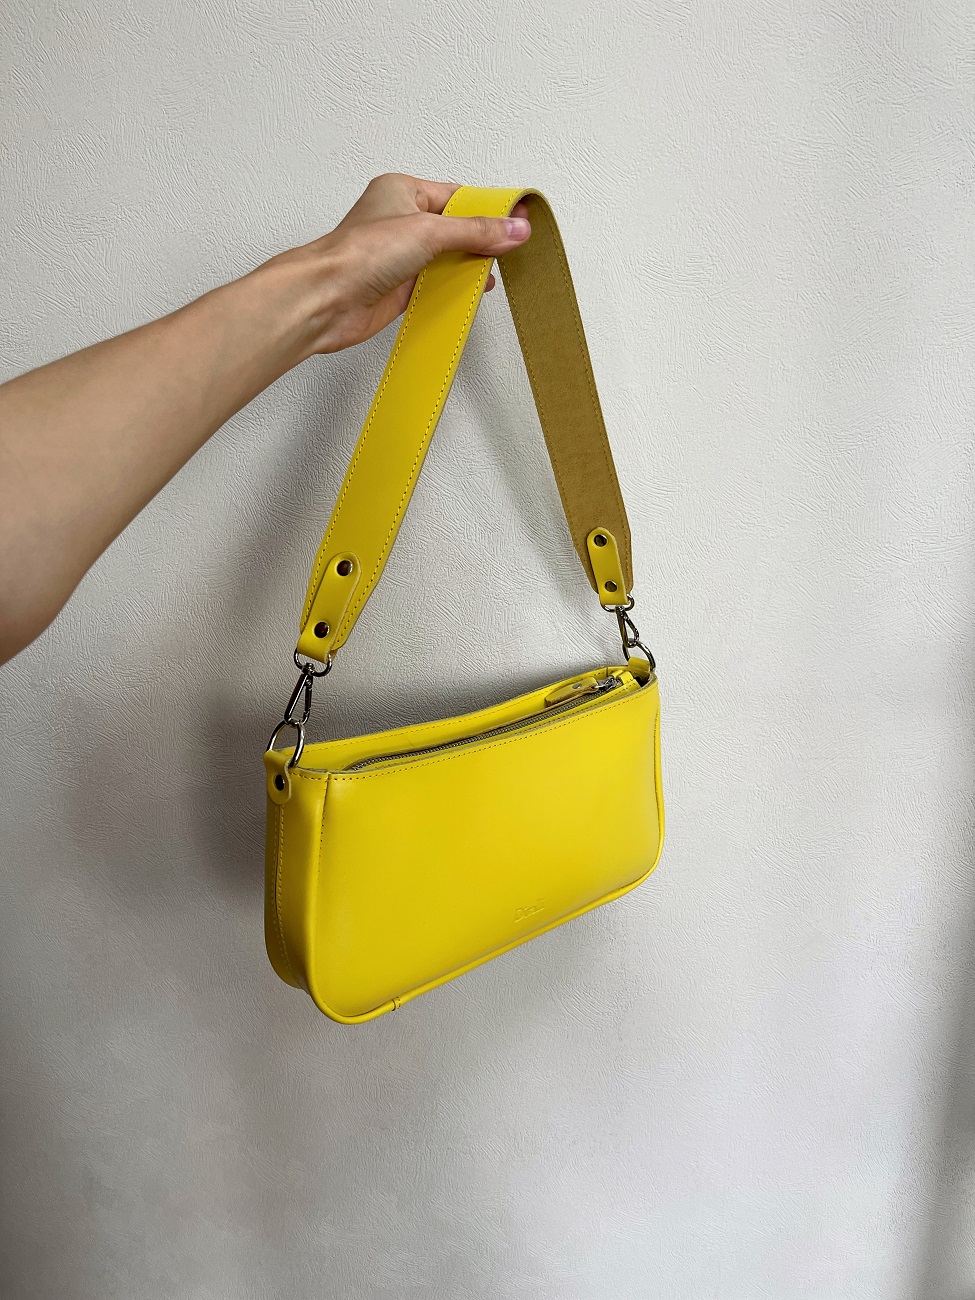 Женская кожаная сумка-багет желтая A041 lemon